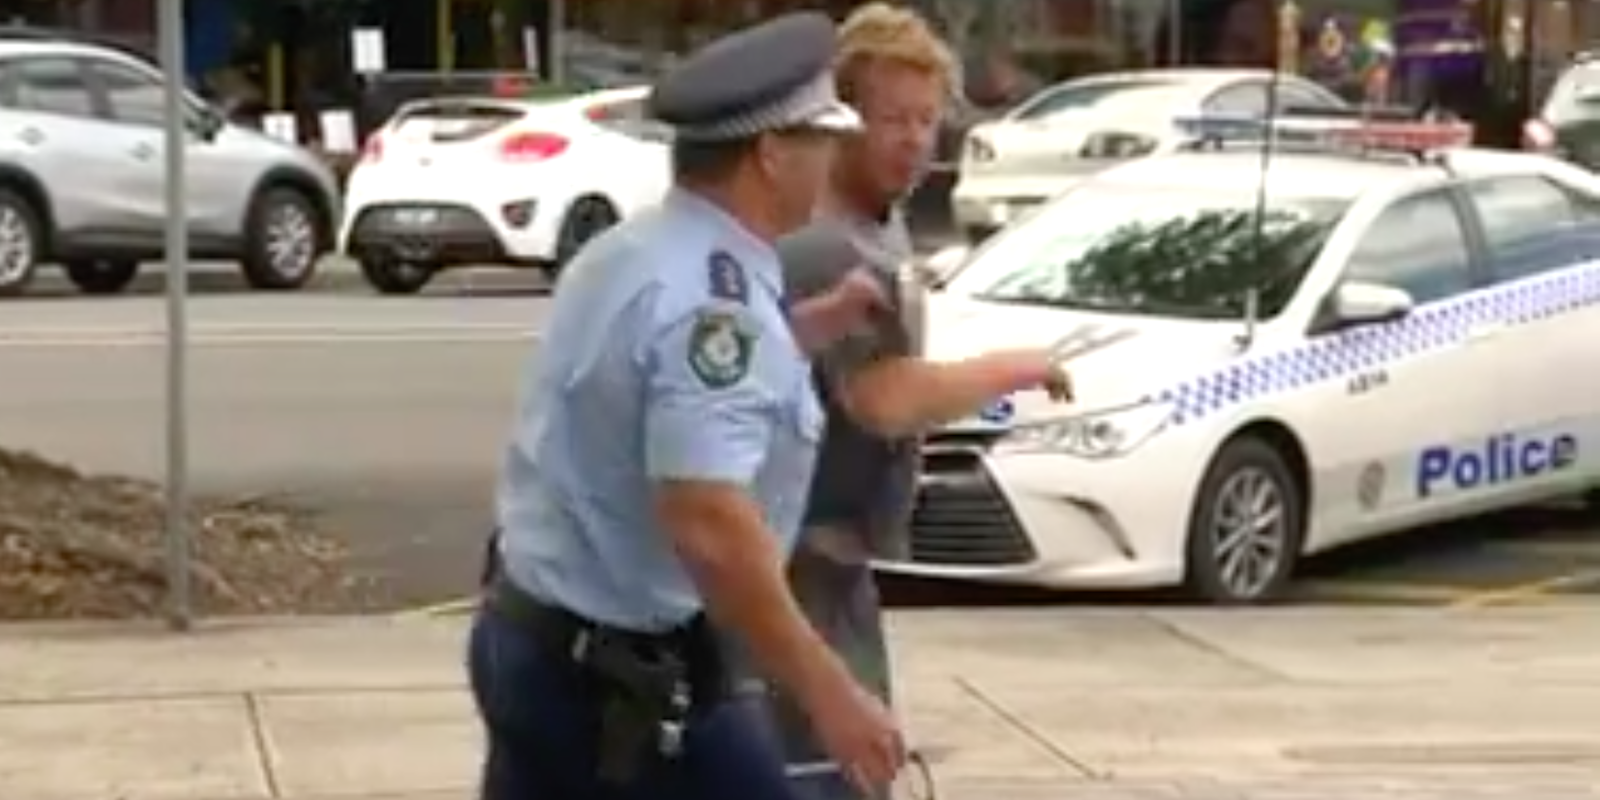 police officer arrests drunk man